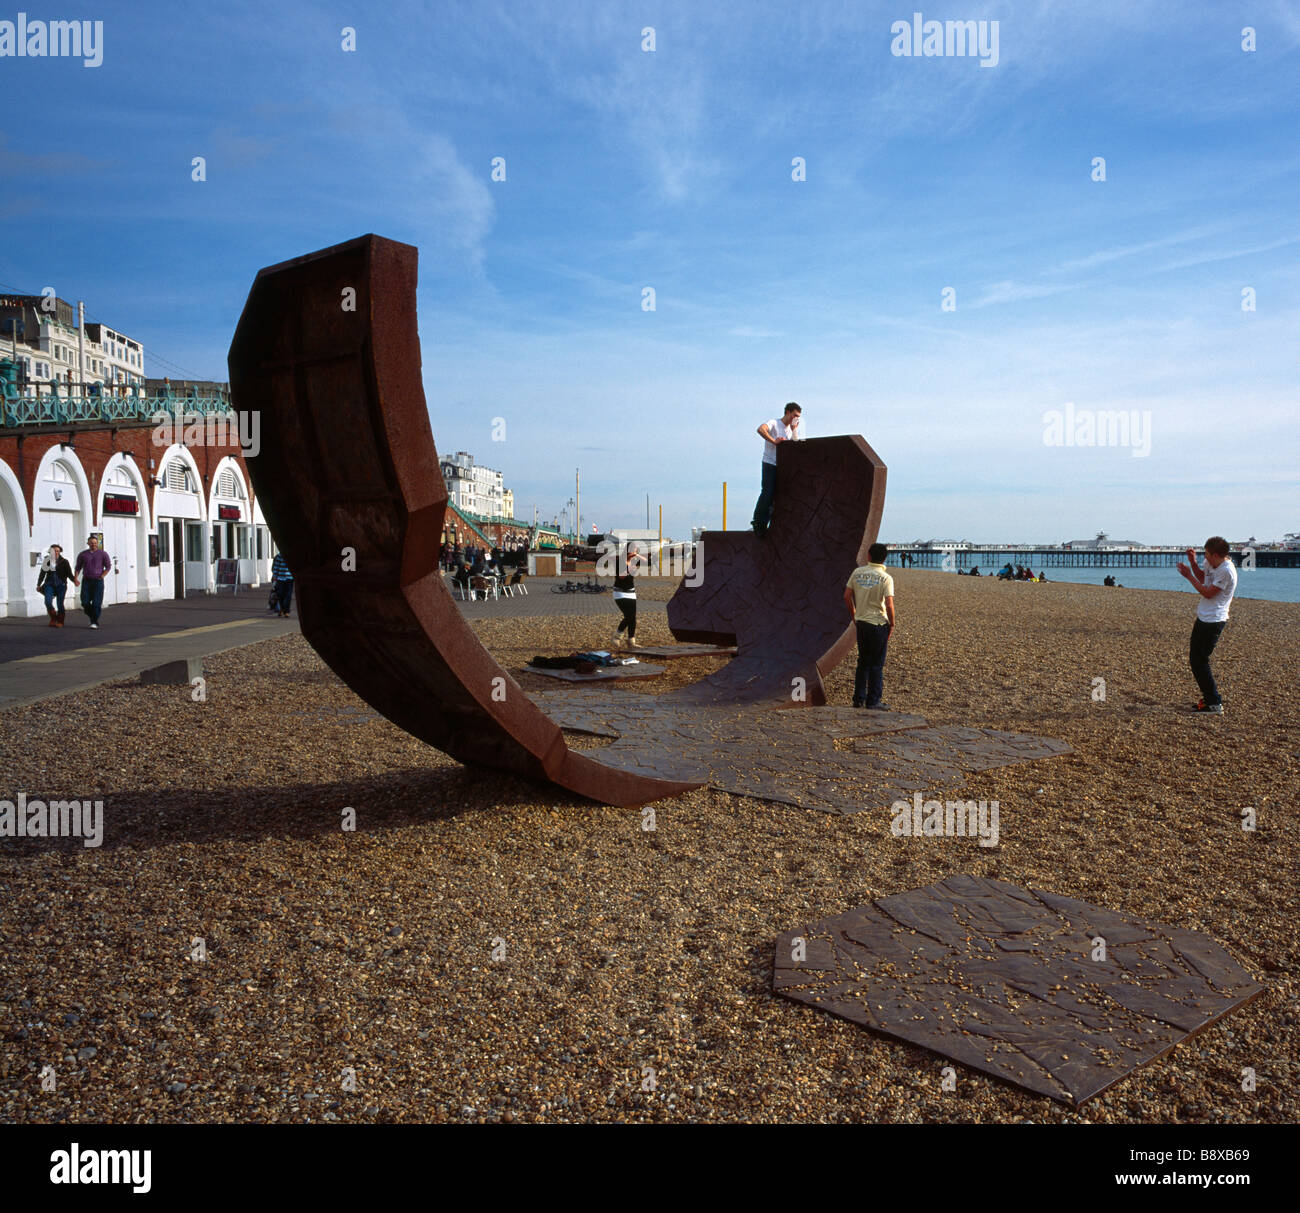 Jugendliche spielen auf einer modernen Kunst Skulptur namens Passacaglia. Strand von Brighton, Sussex, England, UK. Stockfoto